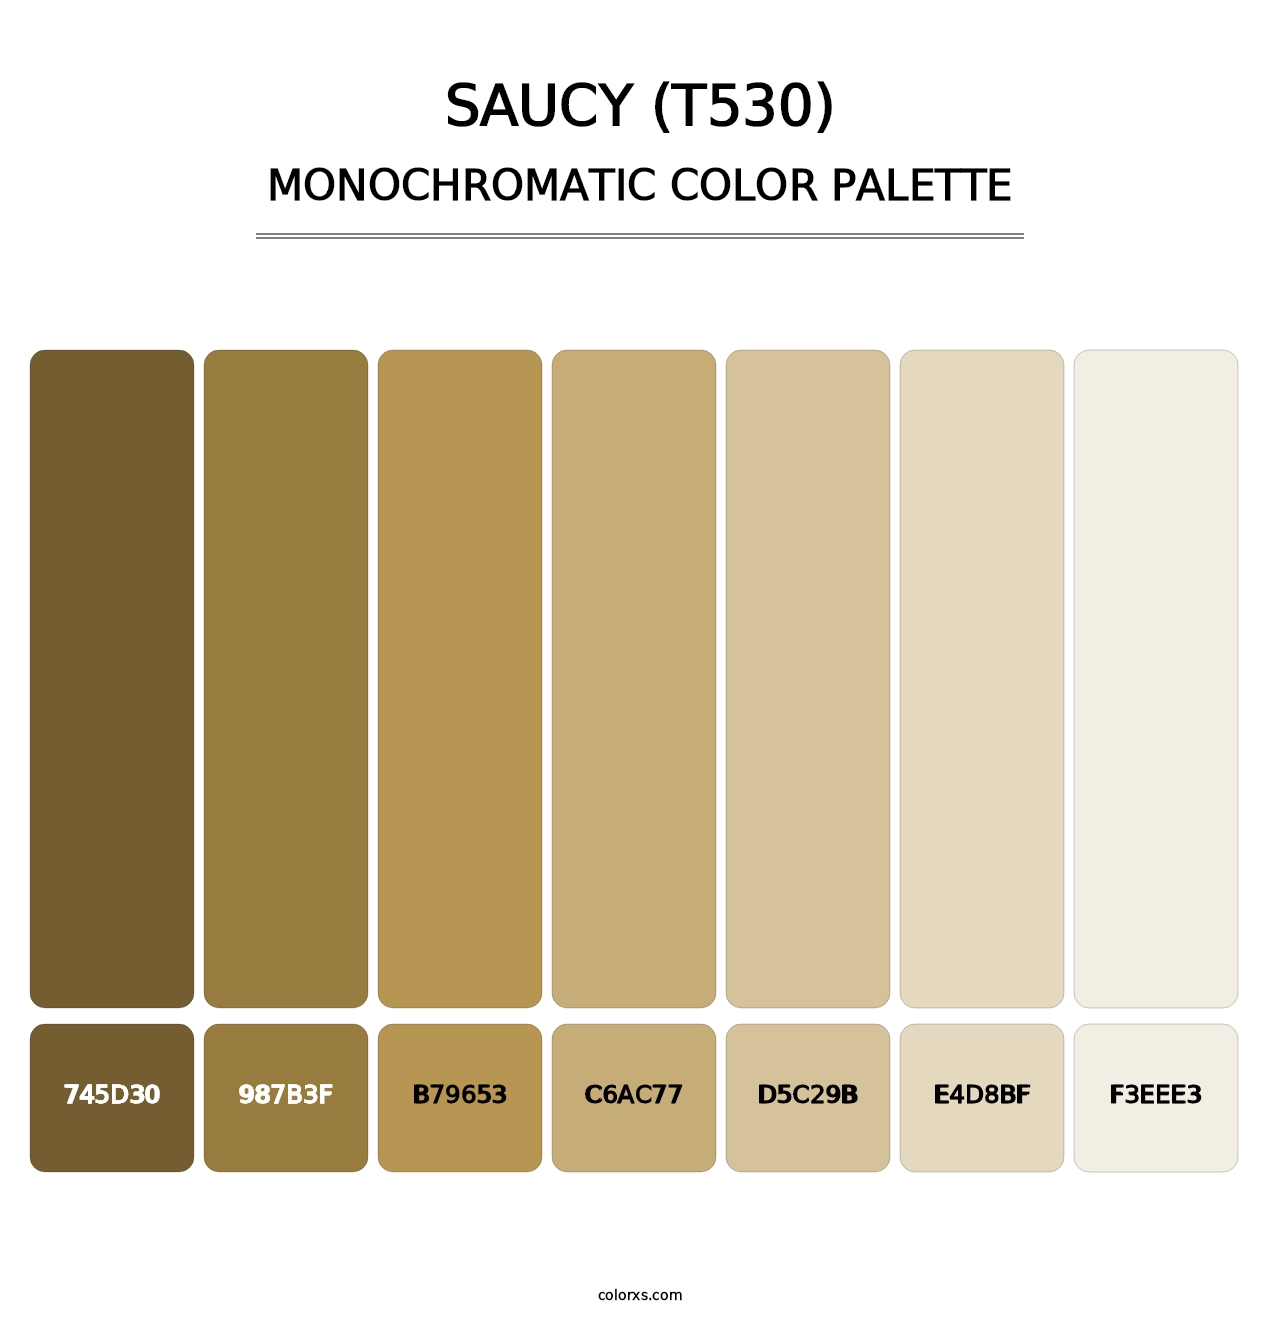 Saucy (T530) - Monochromatic Color Palette